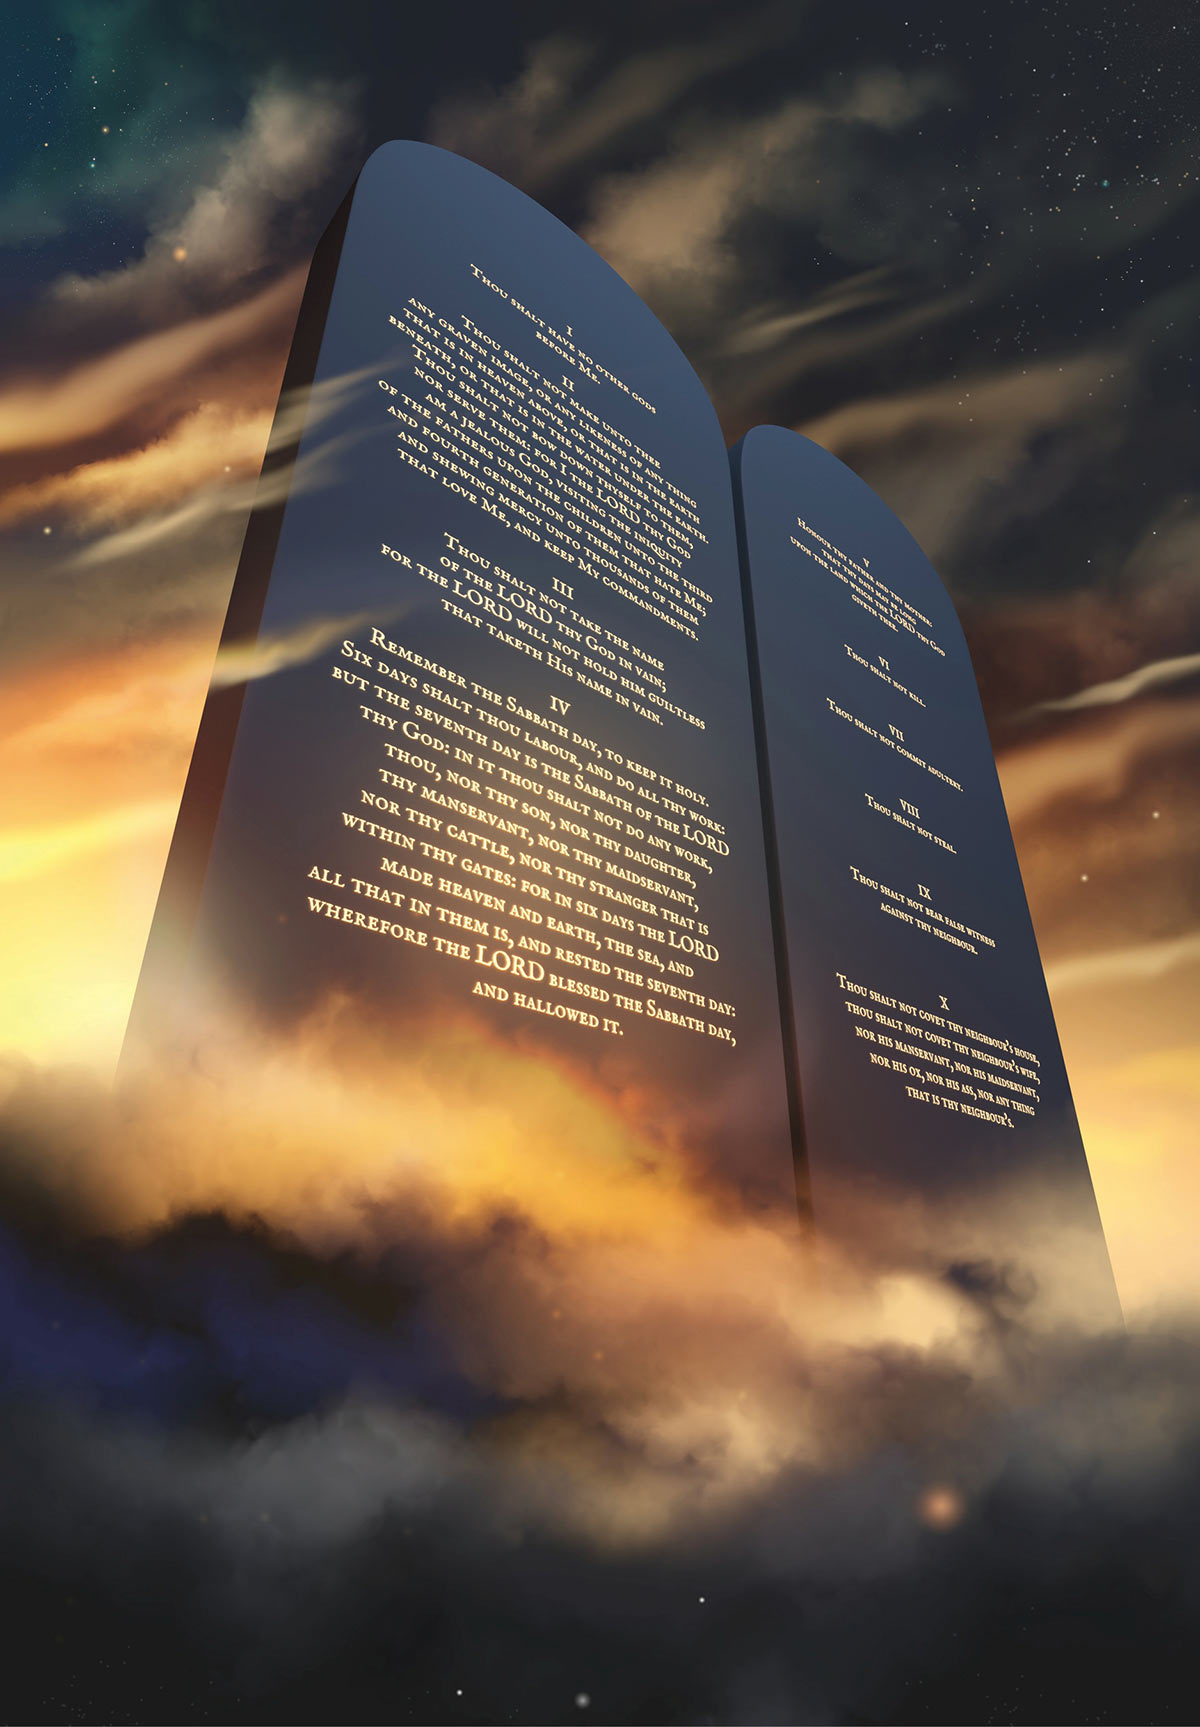 The commandments tablets